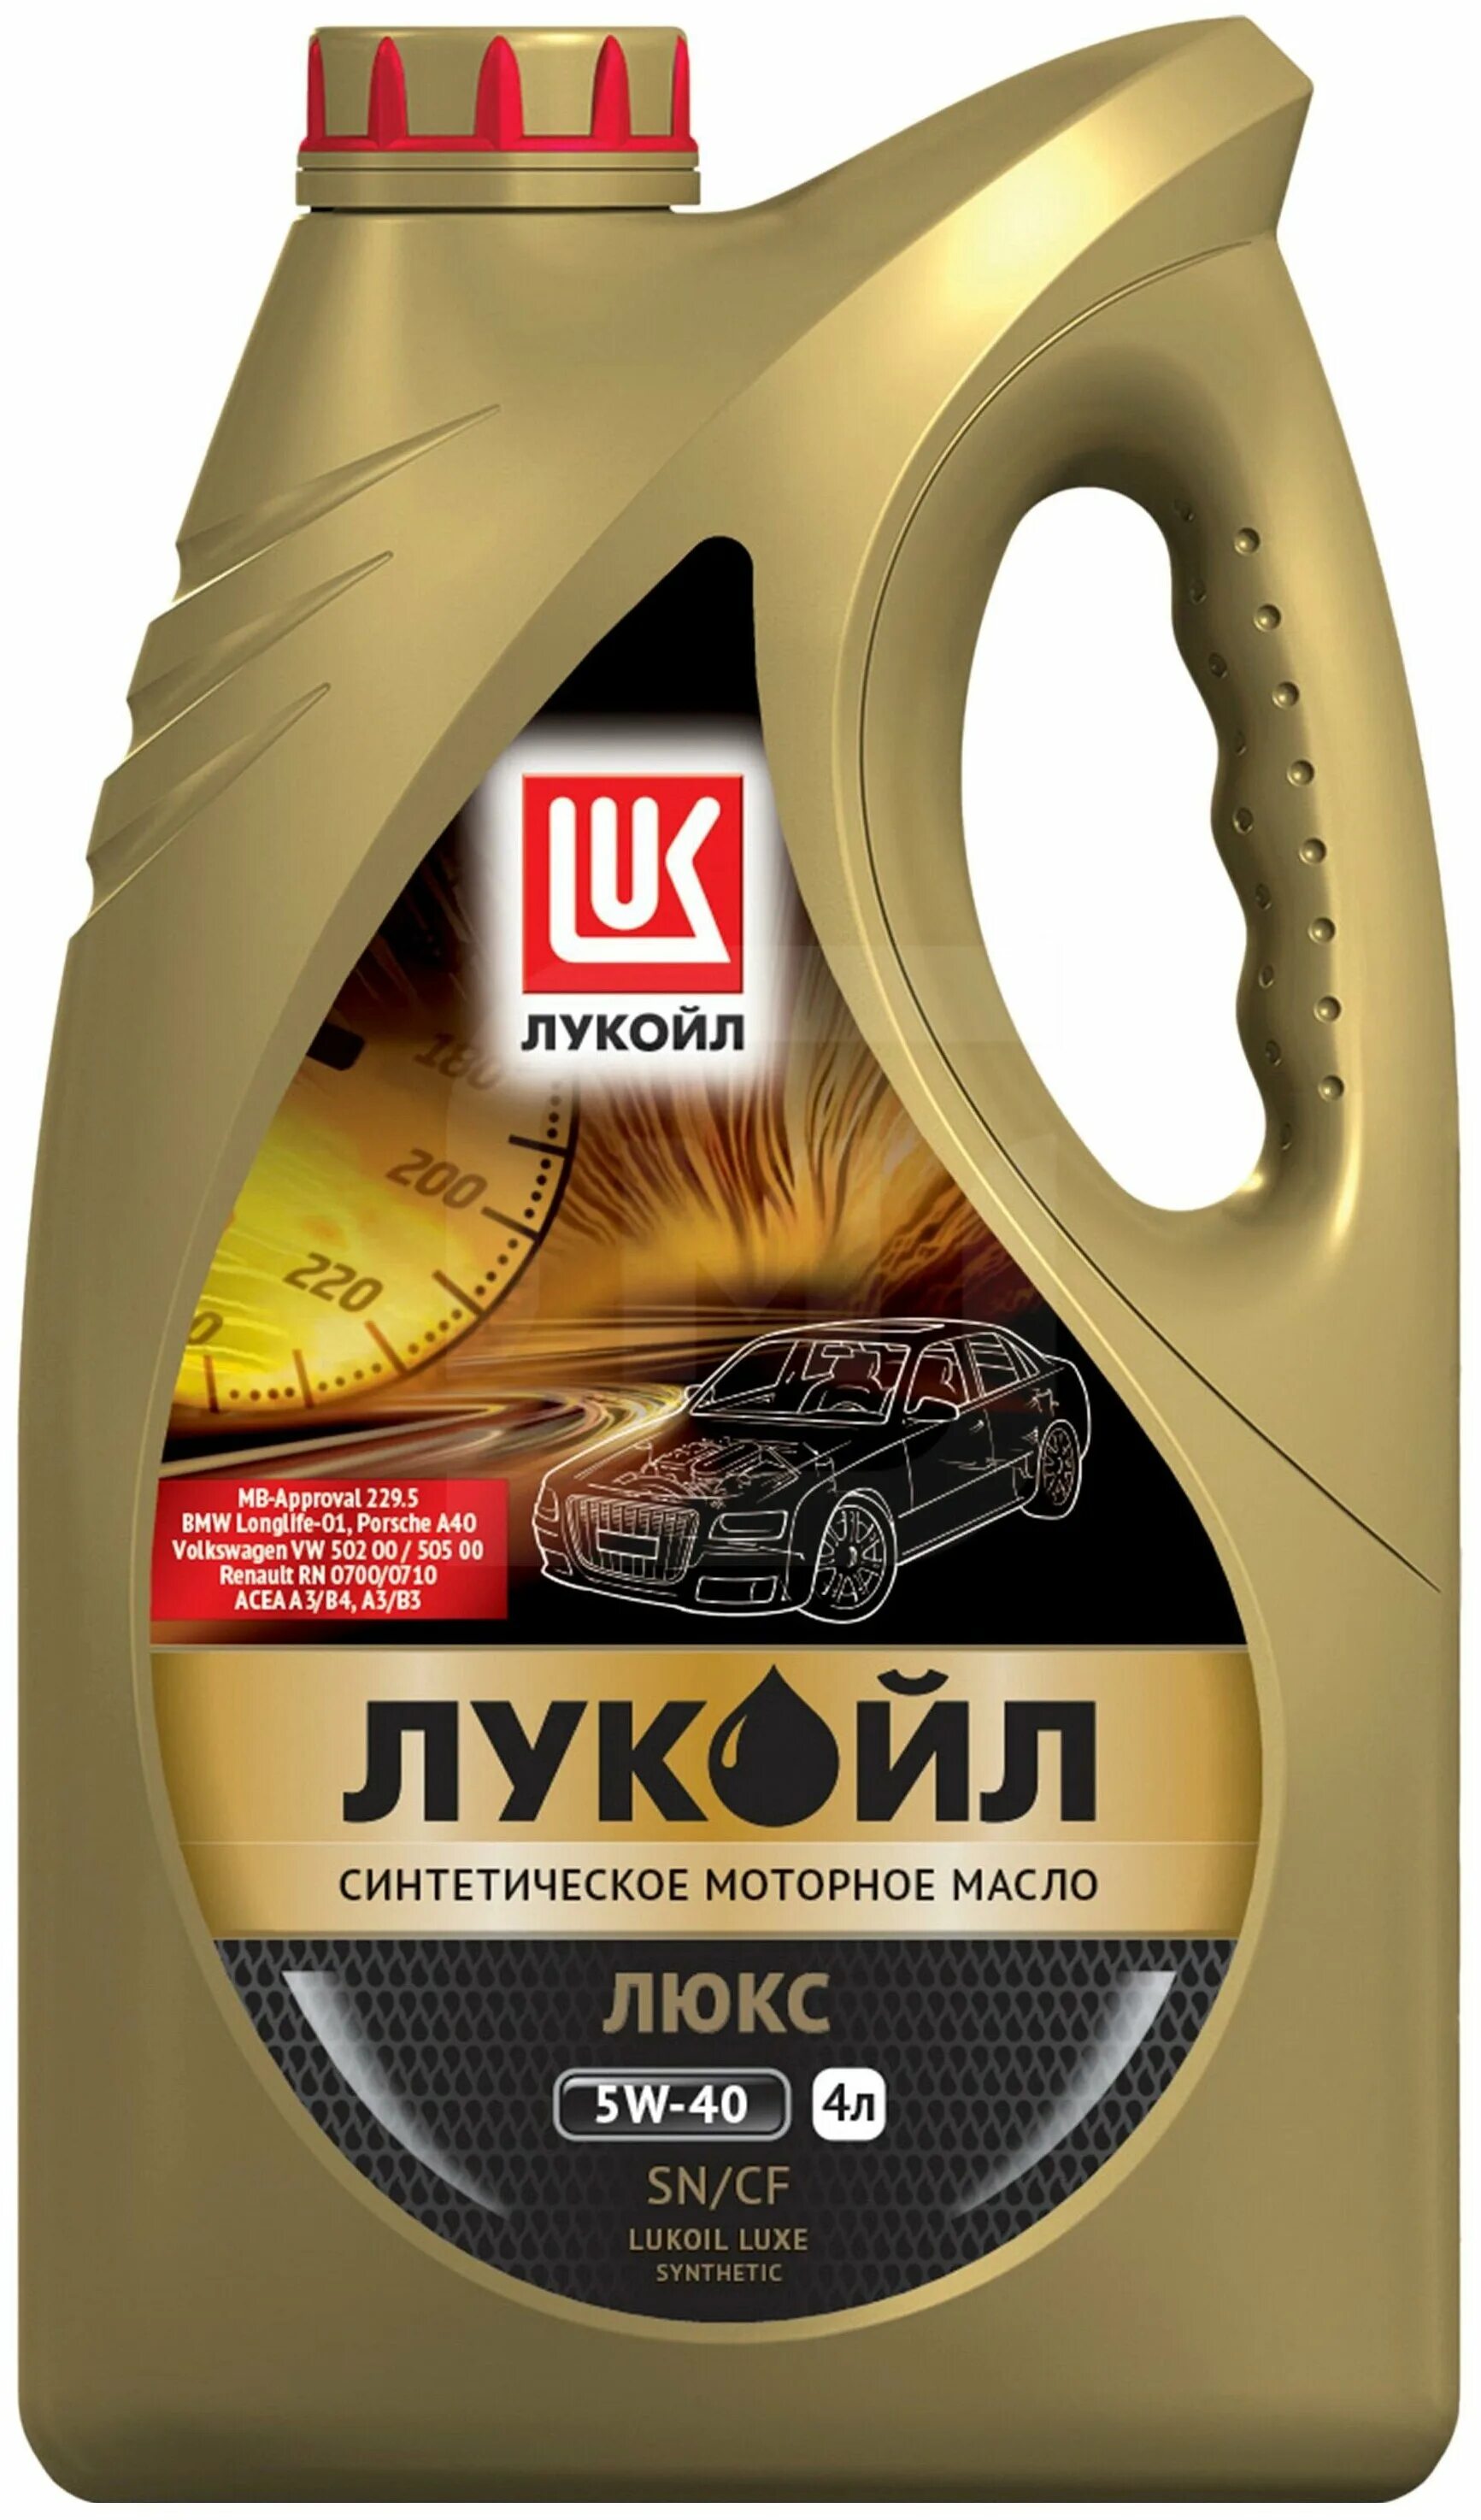 Лукойл масла пермь. Lukoil Luxe 5w-40. Лукойл-Люкс 5w40 4л синтетика. Лукойл Люкс 5w40 синтетика. Масло моторное Лукойл Люкс 5w40 синтетика.